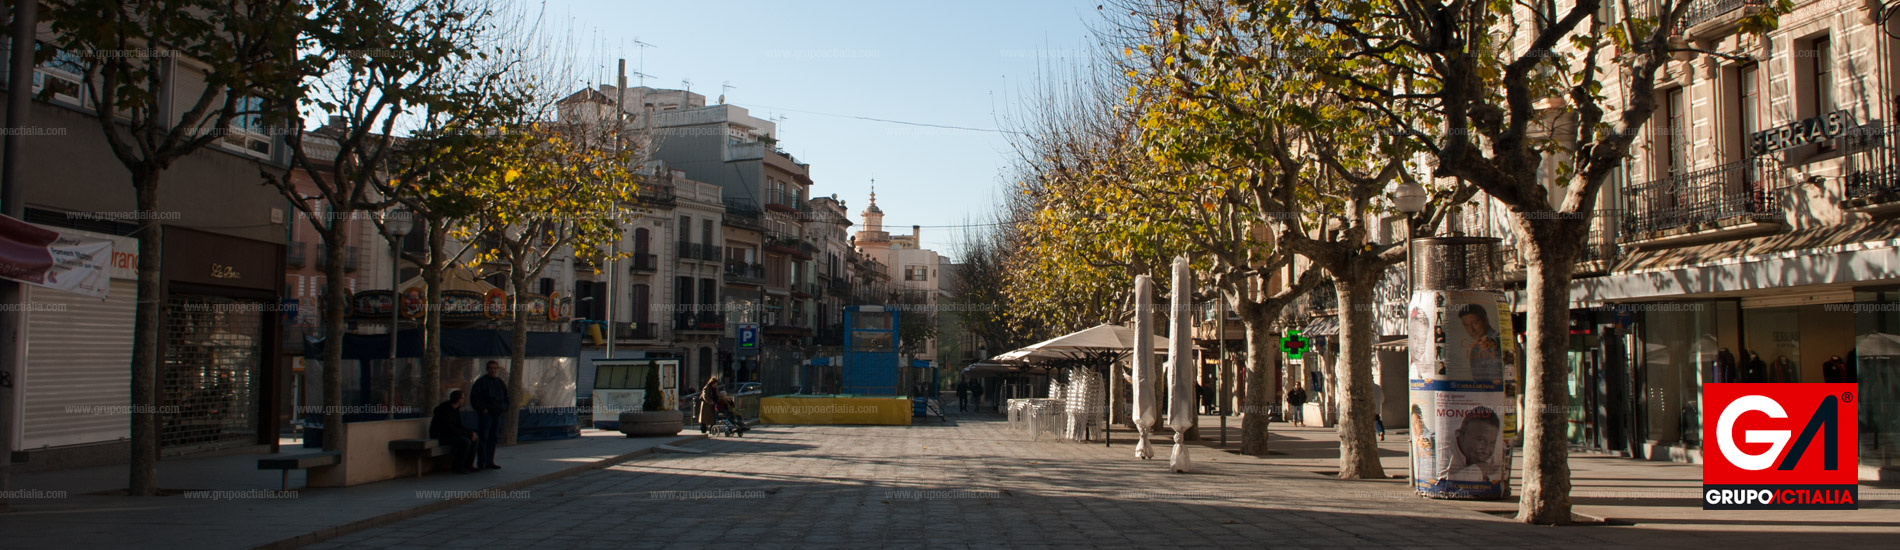  en Mataró | Barcelona (Cataluña)